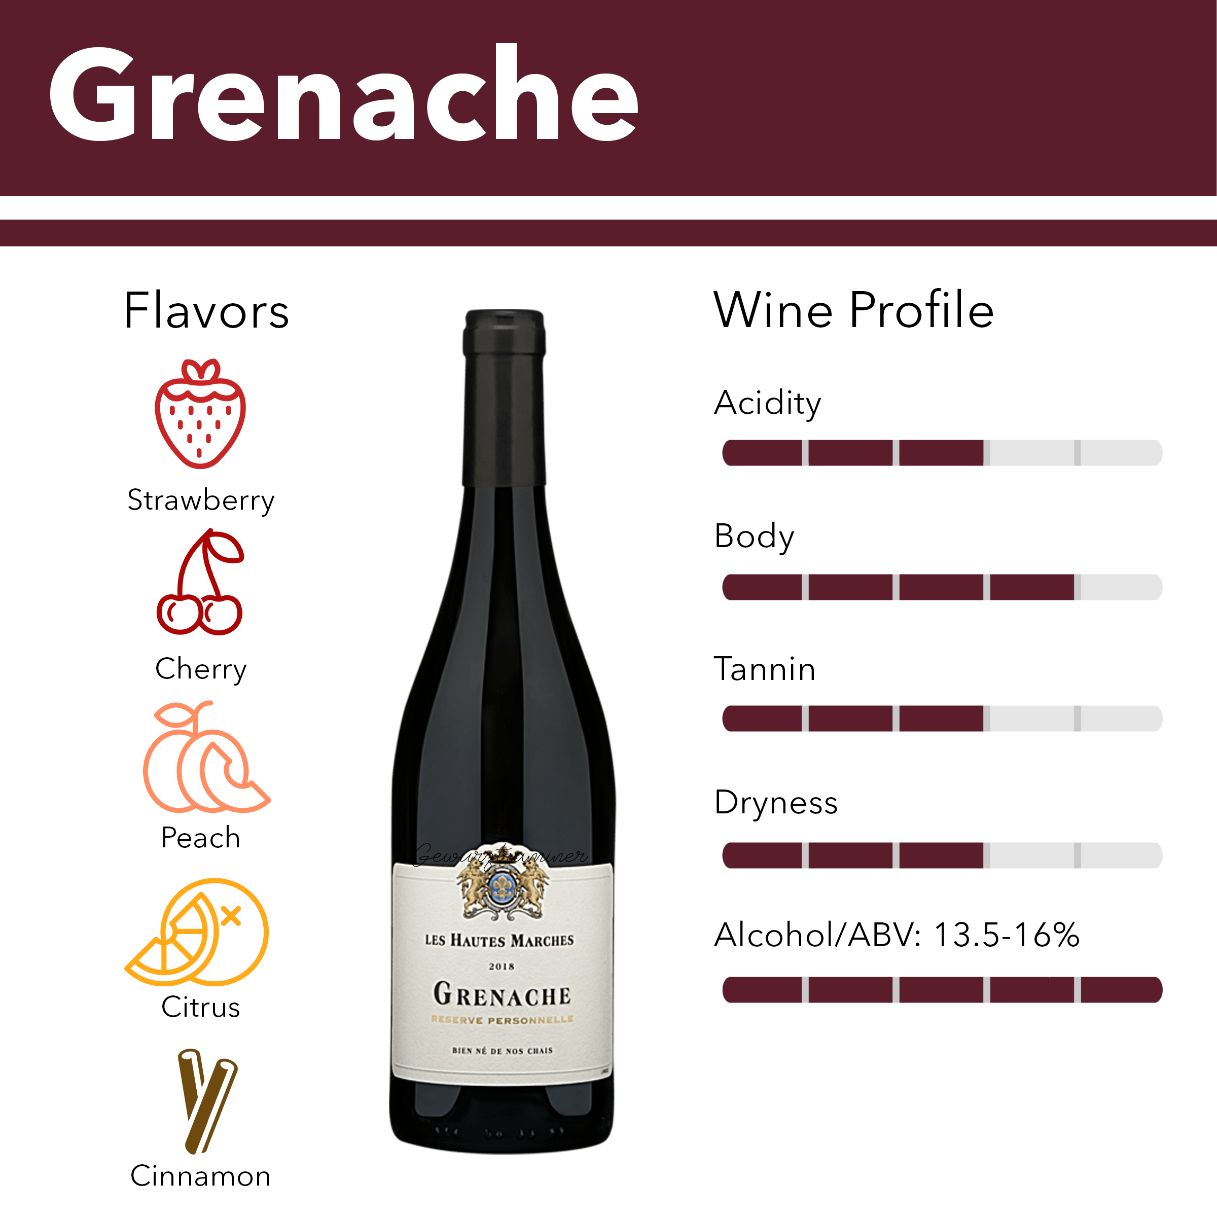 Grenache wine flavor profile.